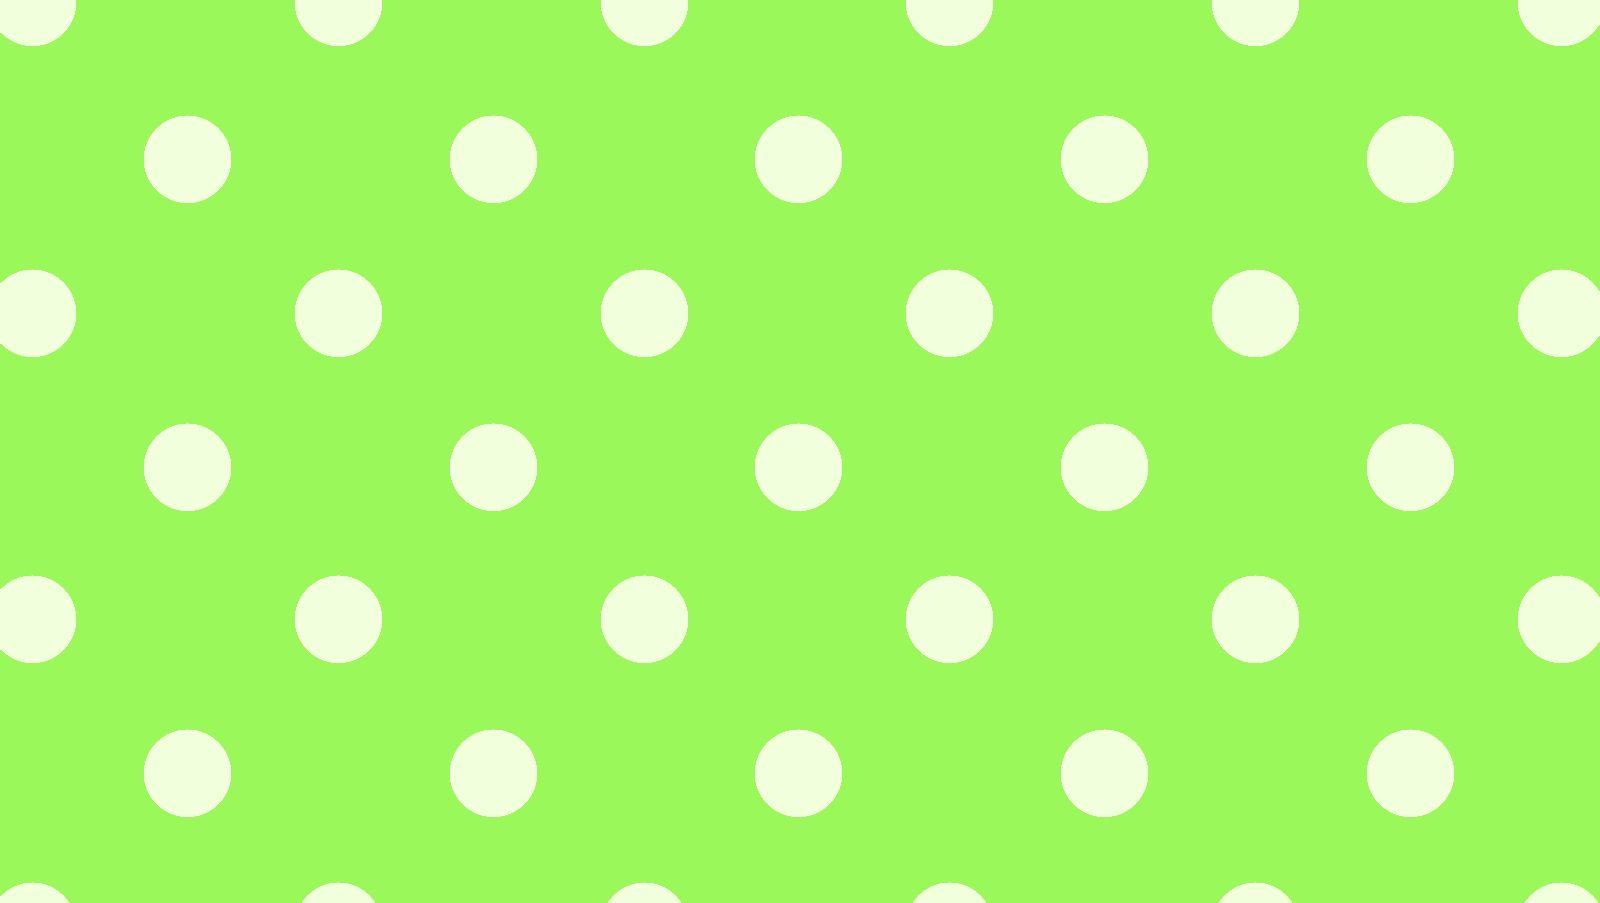 10. Sage Green and Polka Dot Nail Design - wide 3